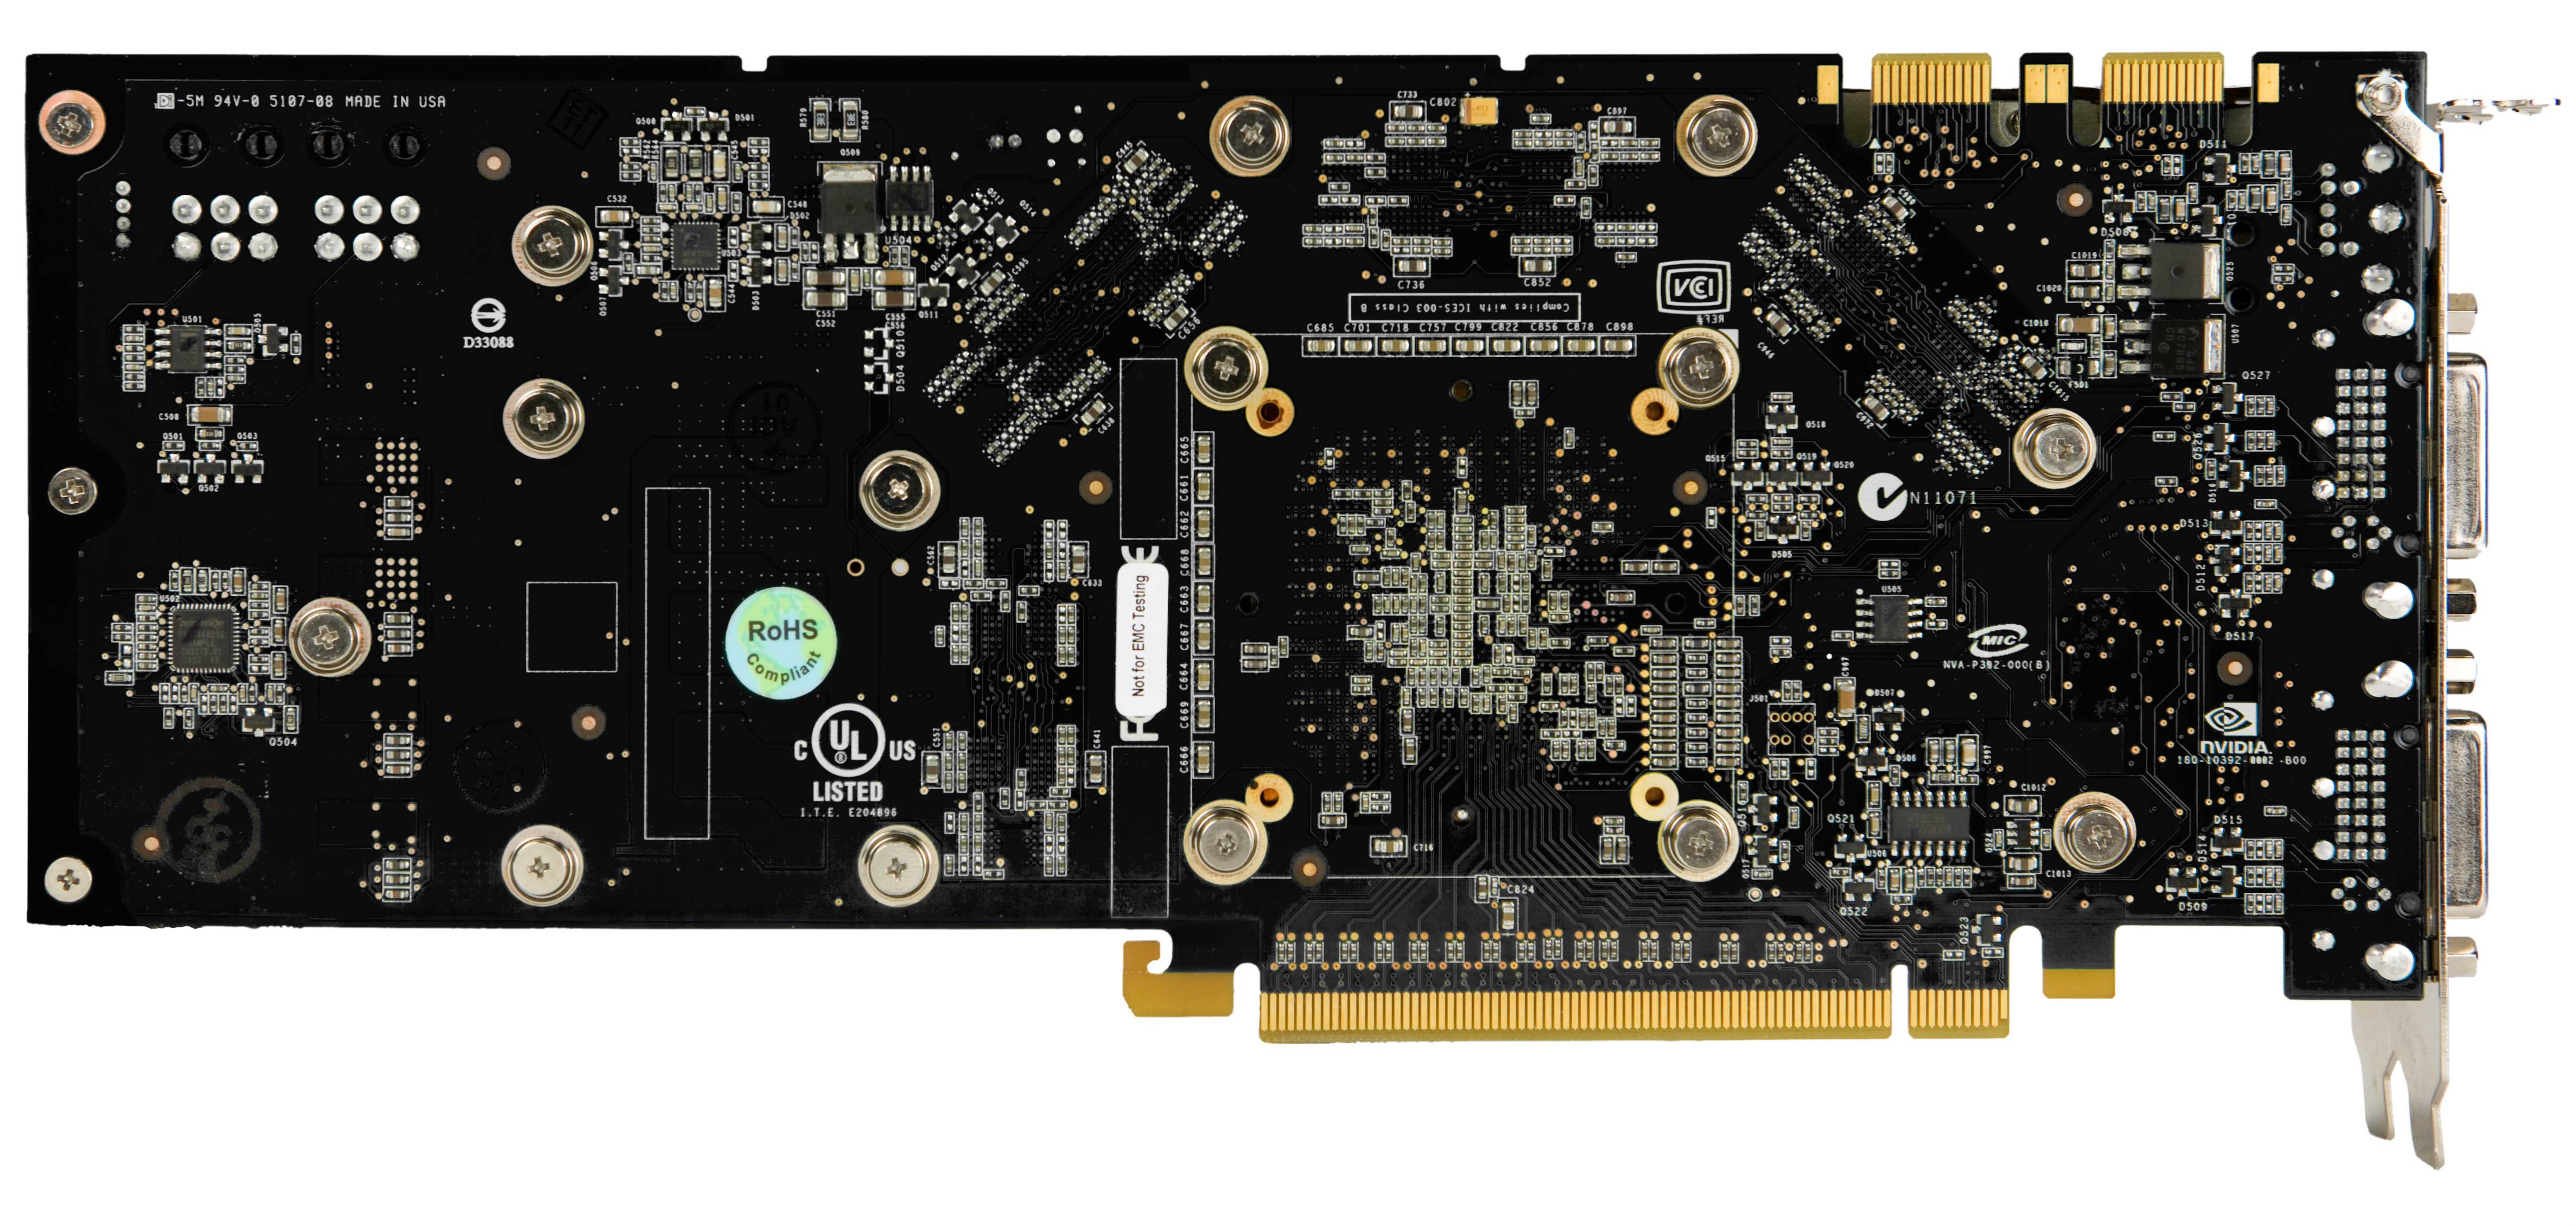 NVIDIA GeForce 9800 GTX, aprílový žertík či nikoliv?